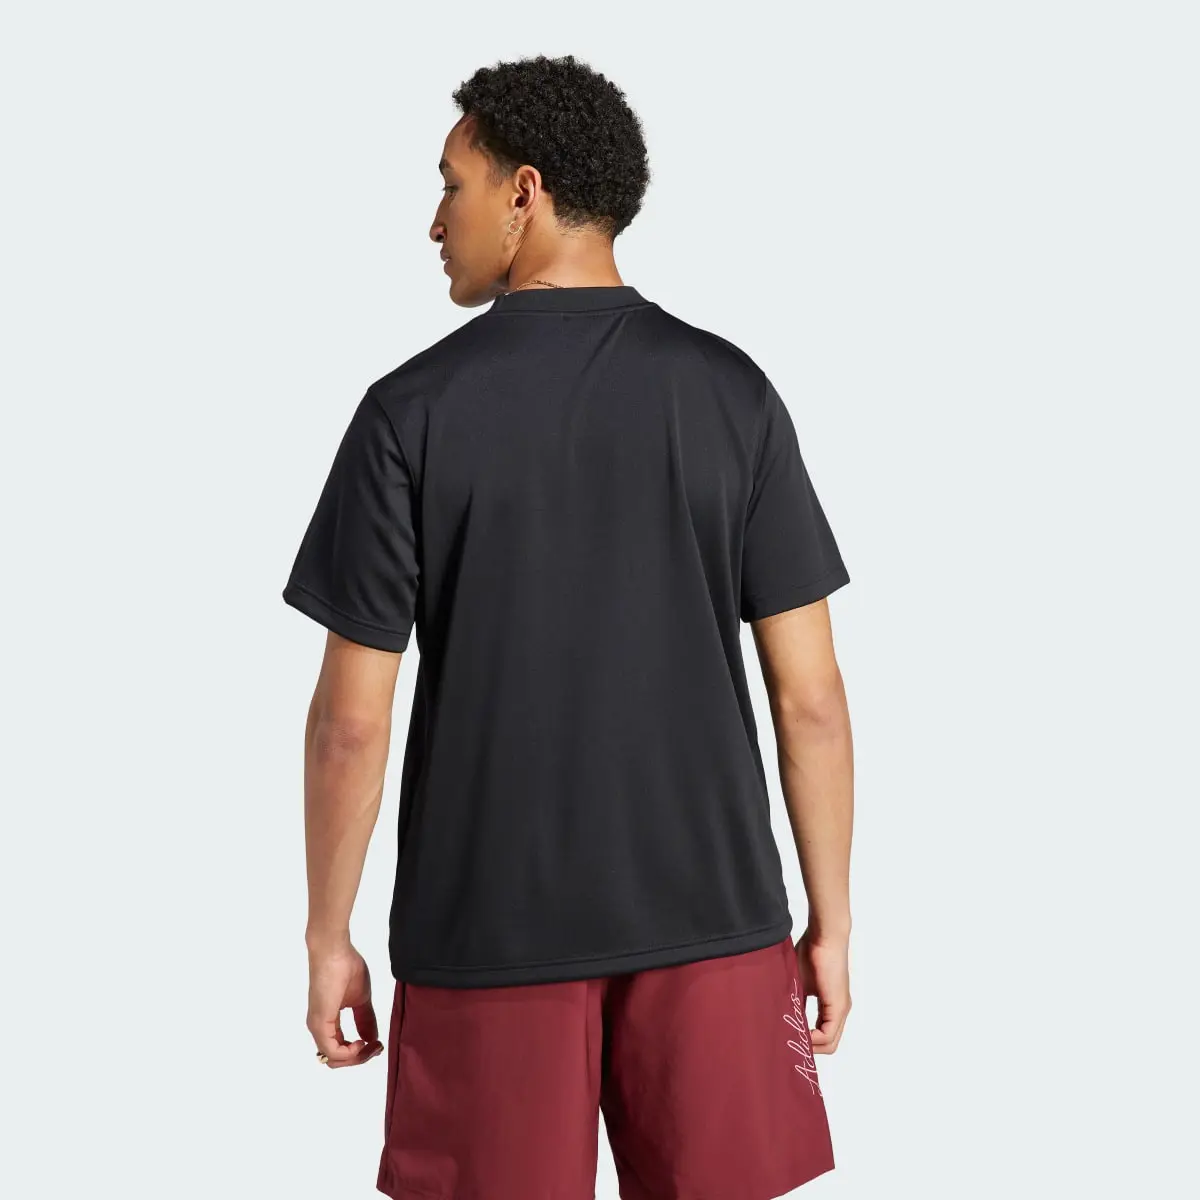 Adidas T-shirt com Costas em Rede. 3